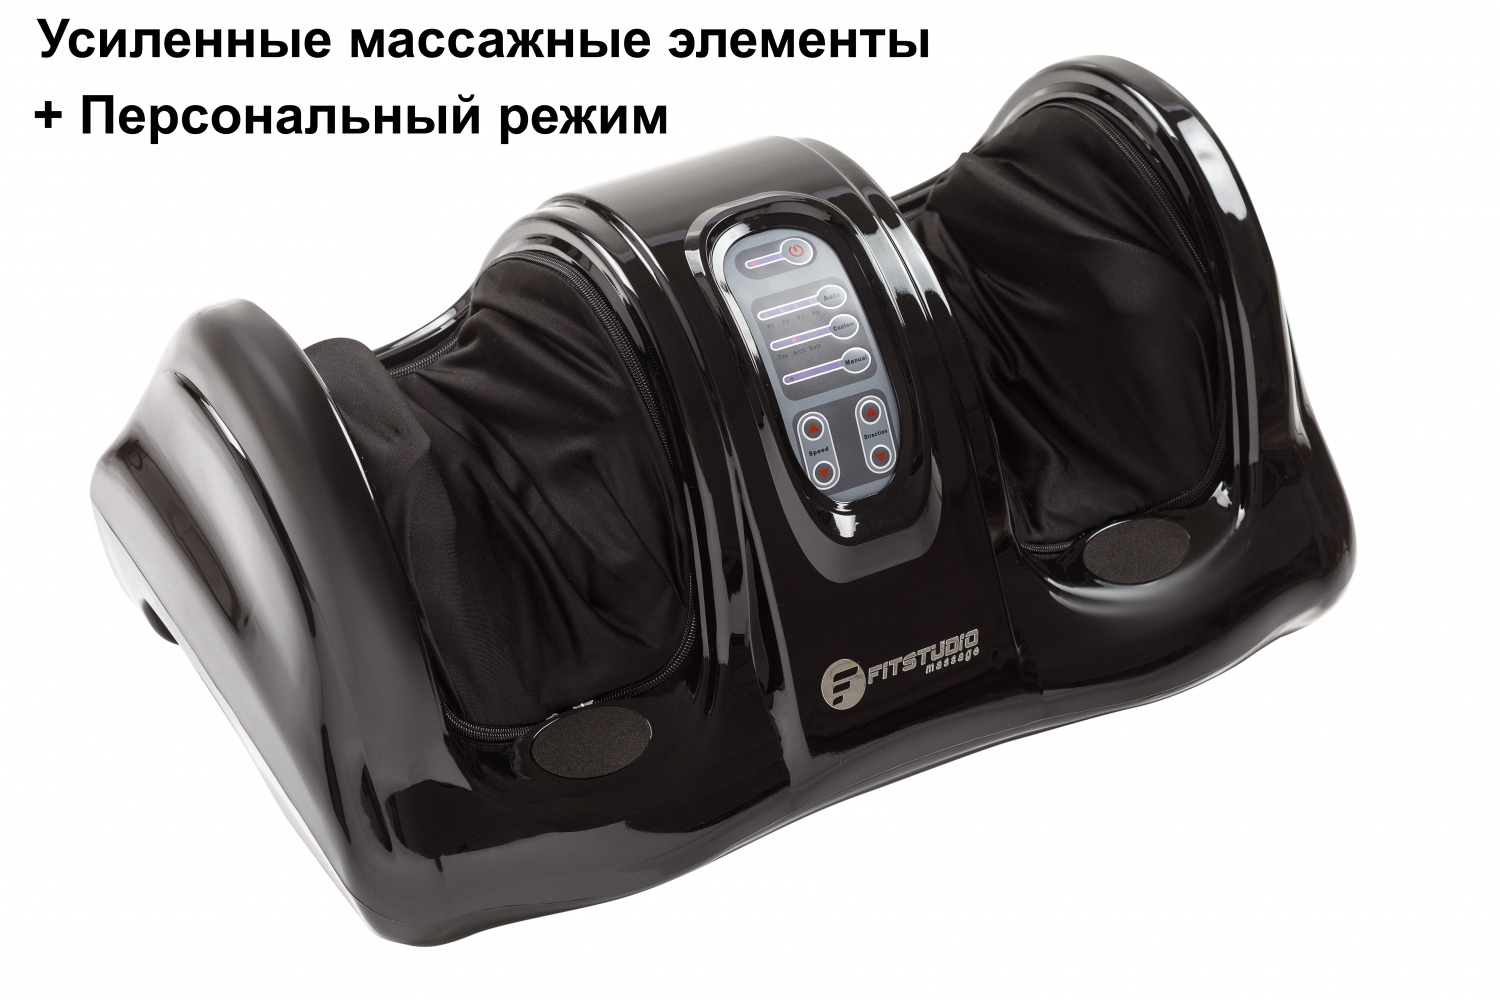 фото Массажер для ног с персональным режимом foot massage plus fitstudio (черный)